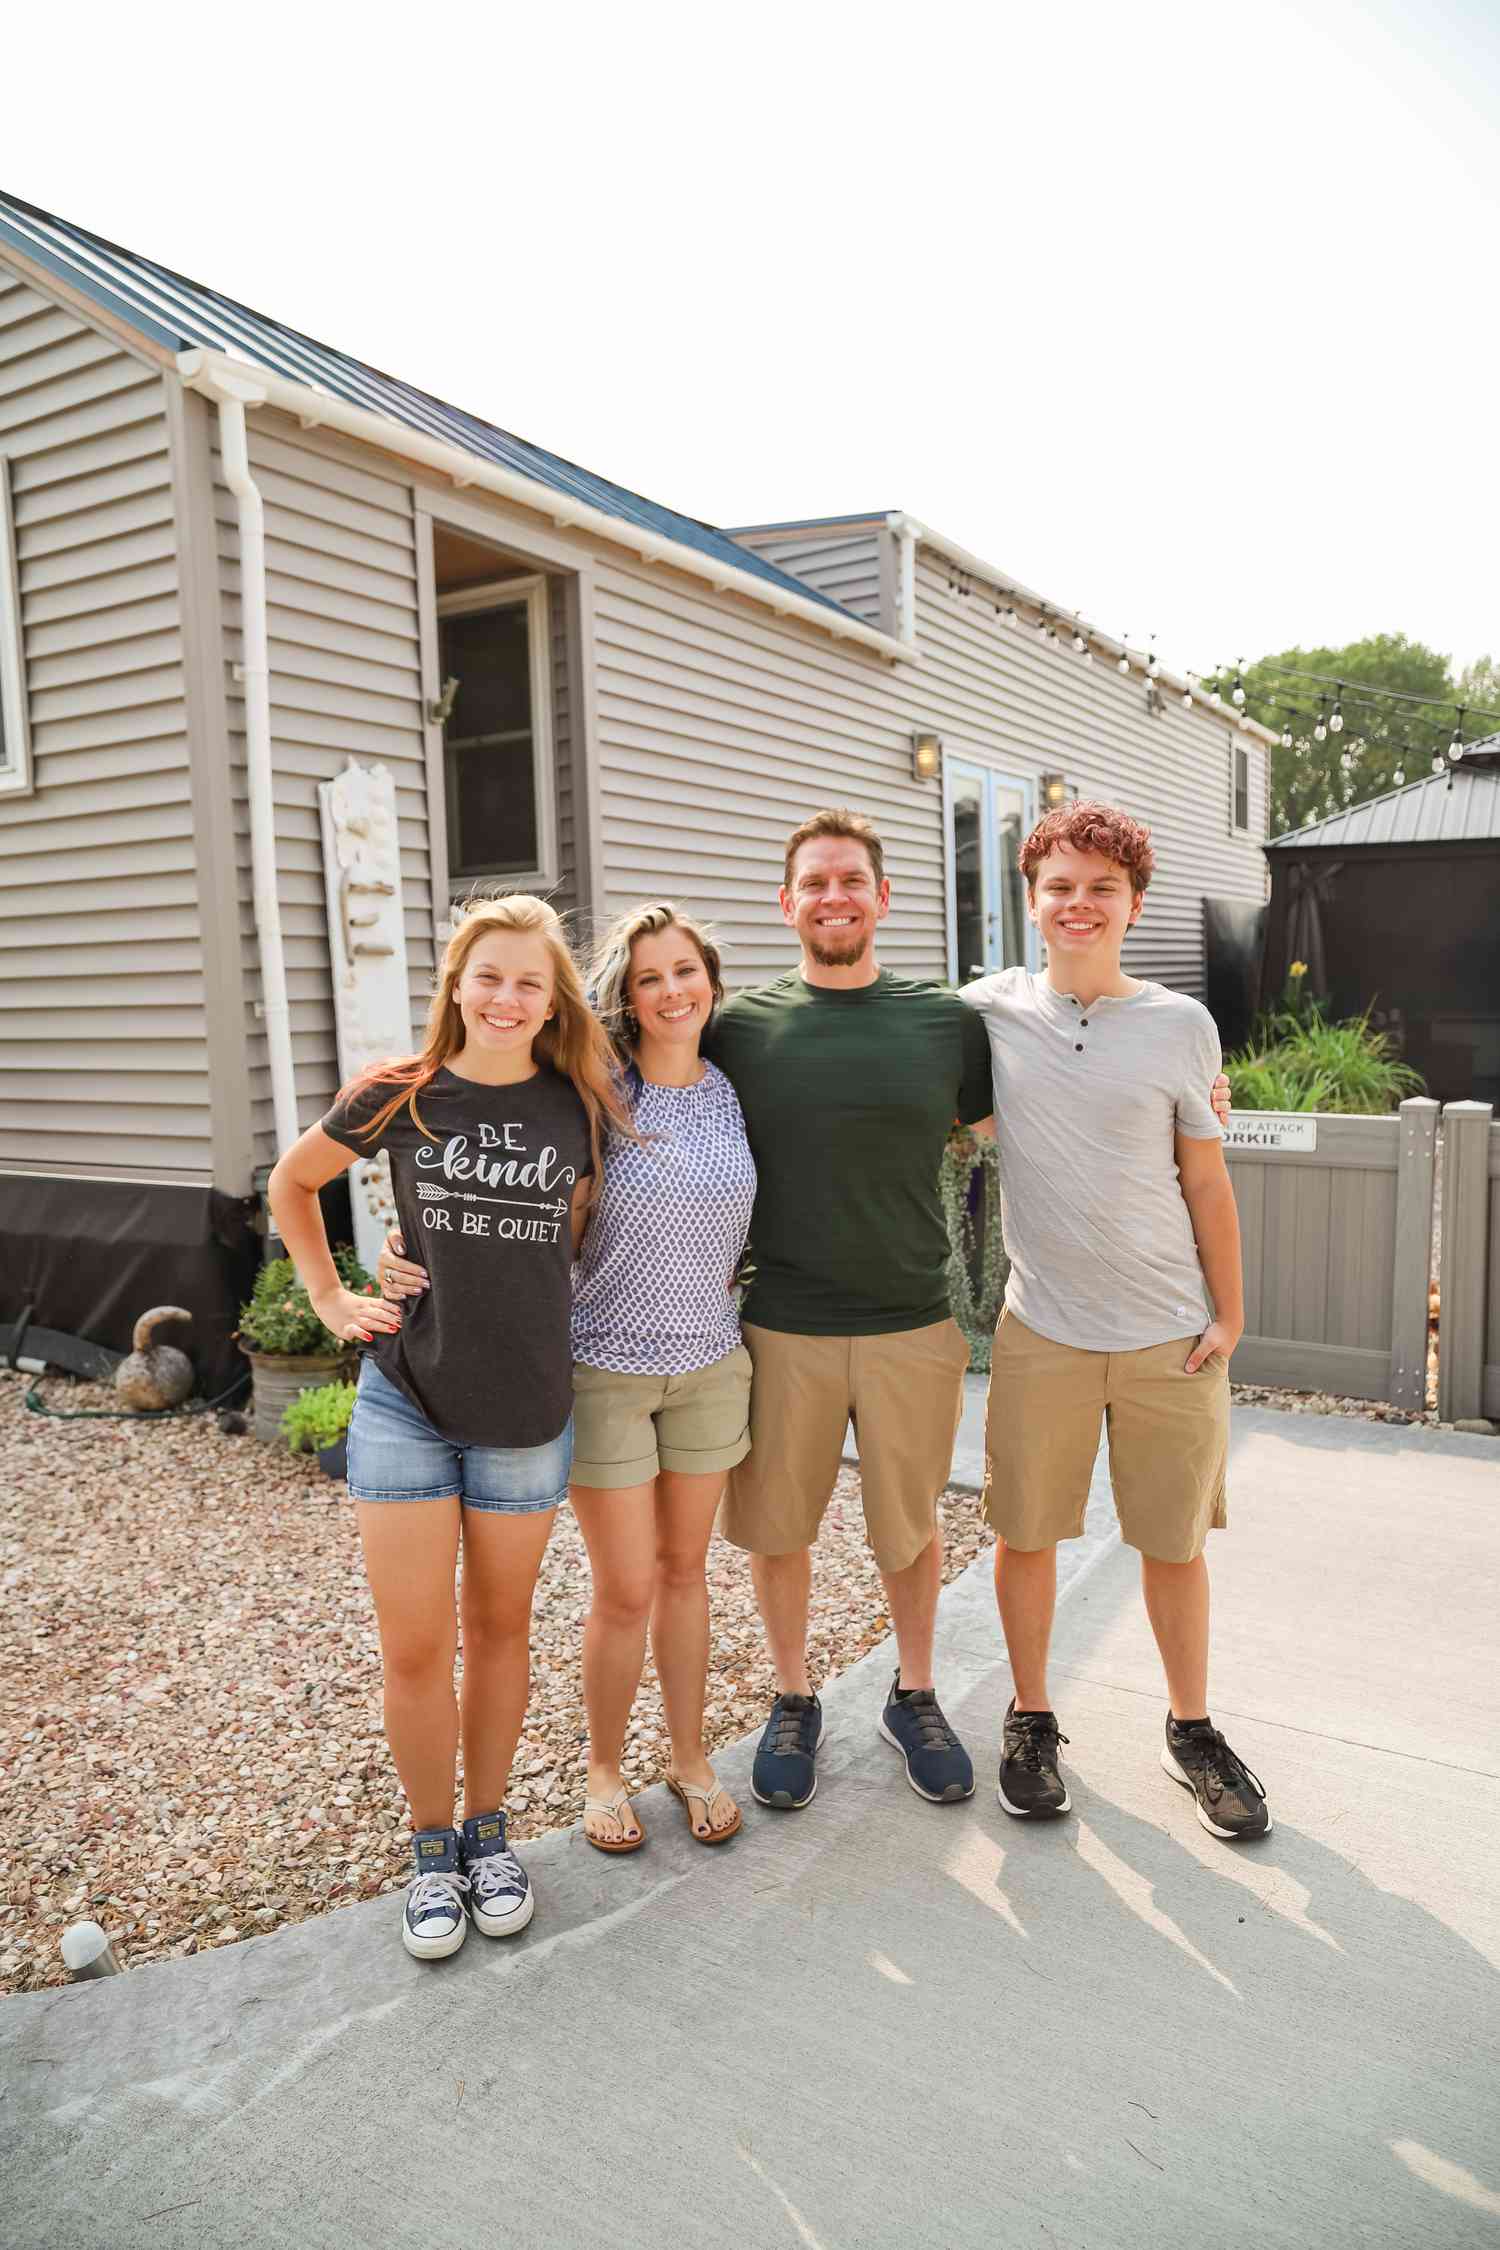 Sam e Breanne Sims vivem e criam seus filhos Keegan, de 18 anos, e Emme, de 16, em sua pequena casa personalizada em Nebraska há cinco anos